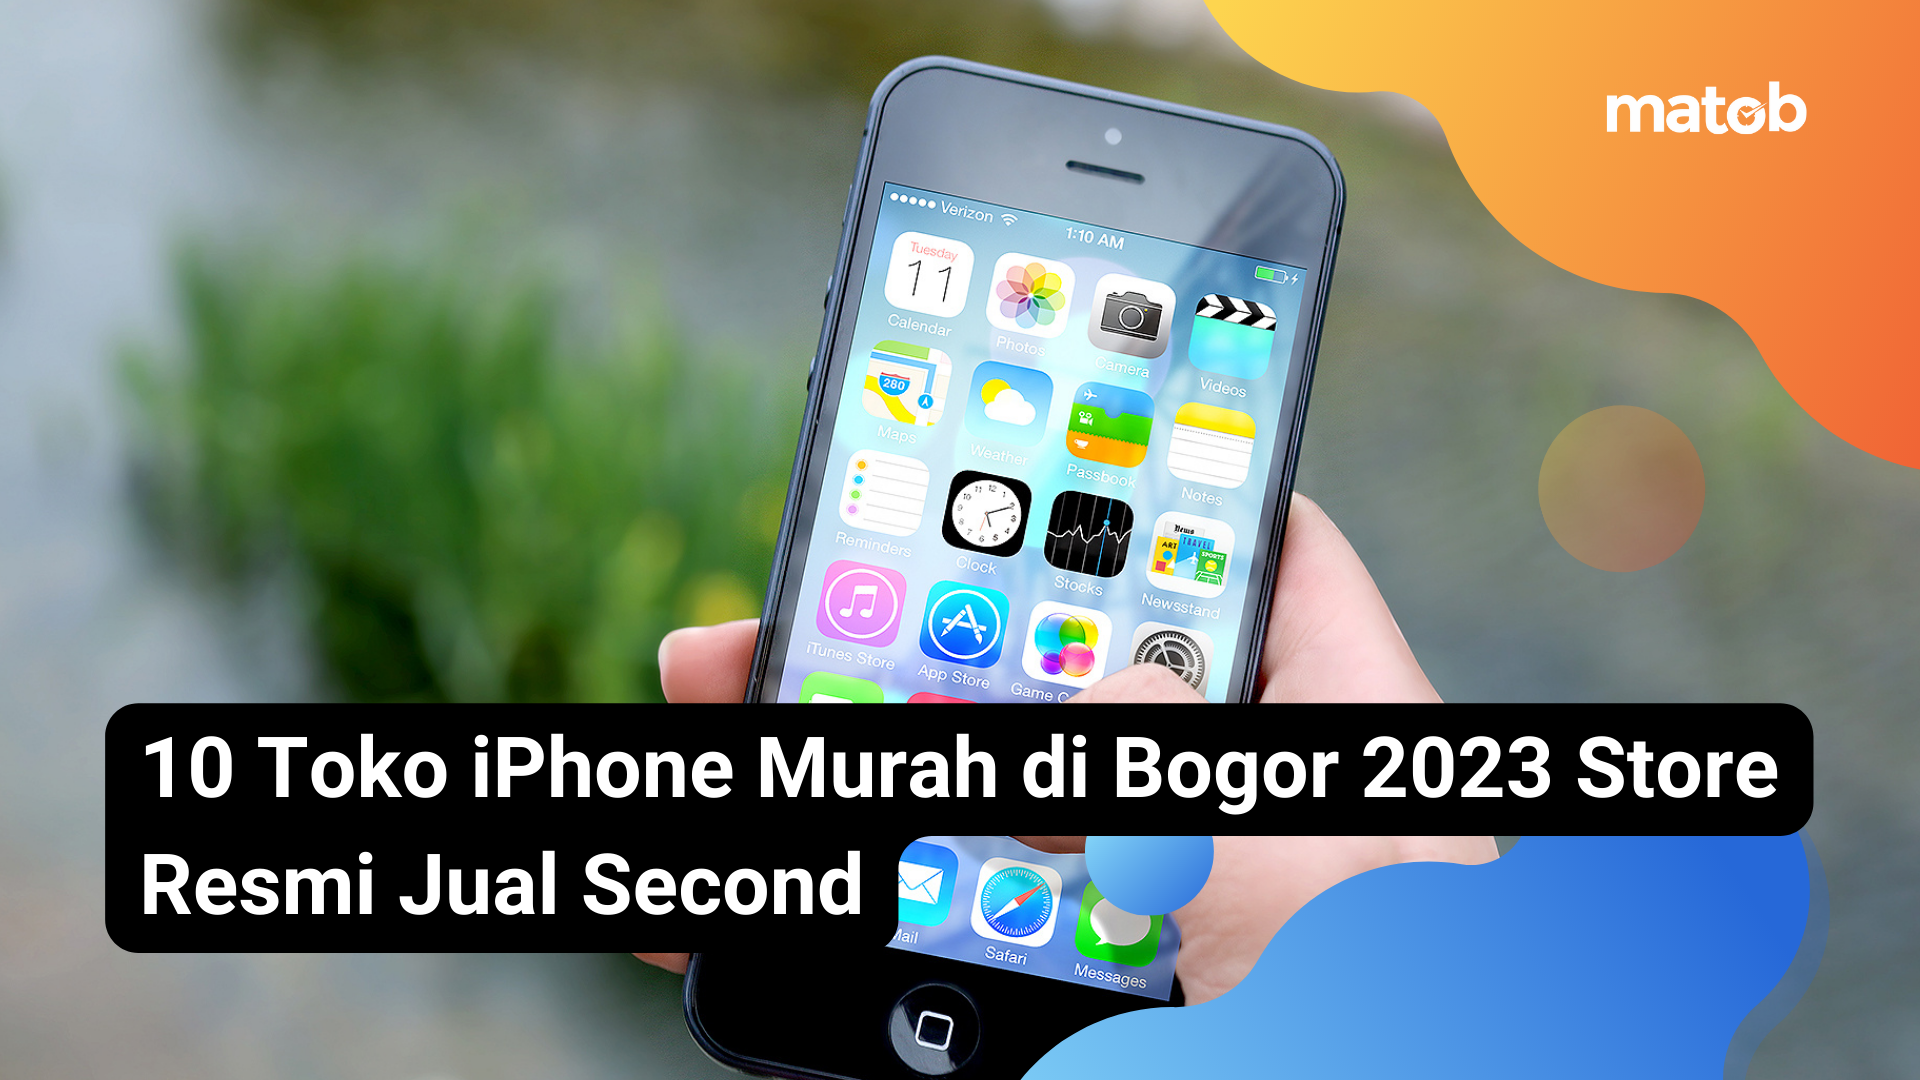 20 Matob Bisnis 10 Toko iPhone Murah di Bogor 2023 Store Resmi Jual Second